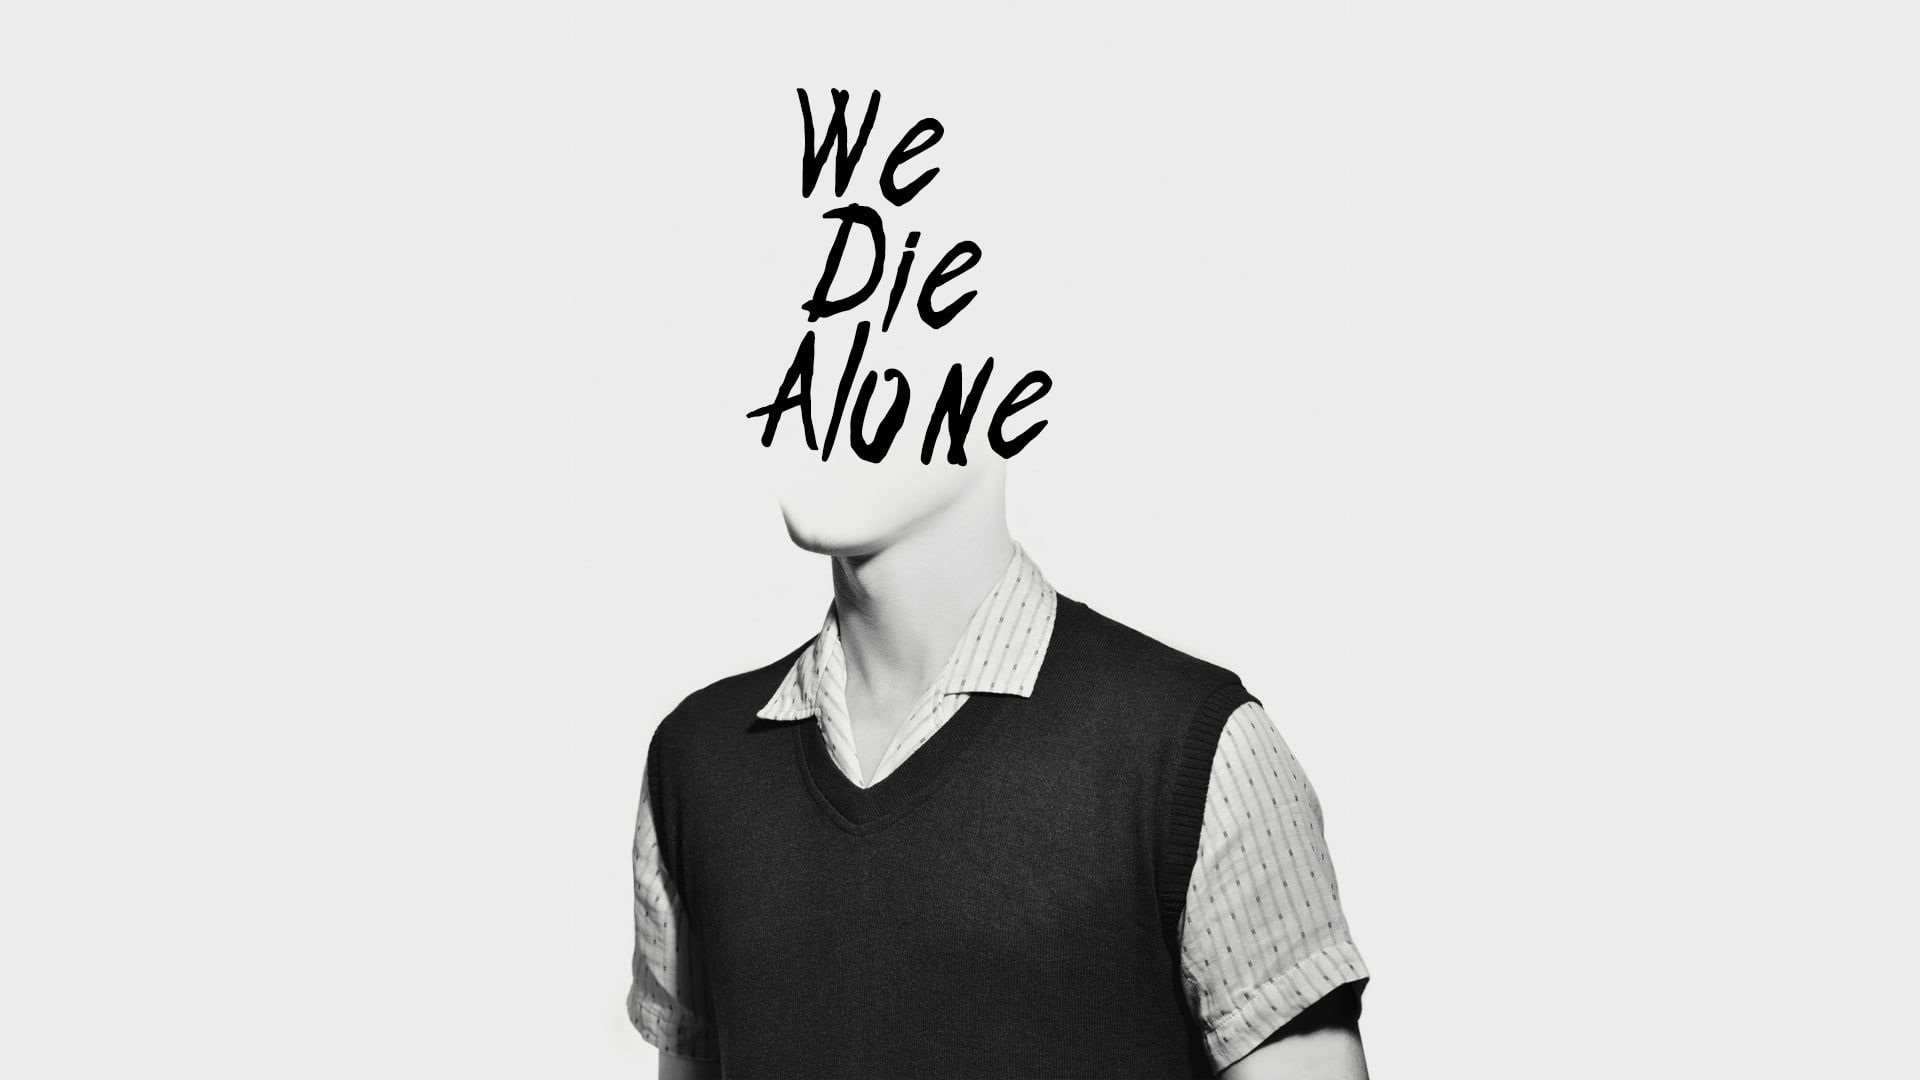 We Die Alone background